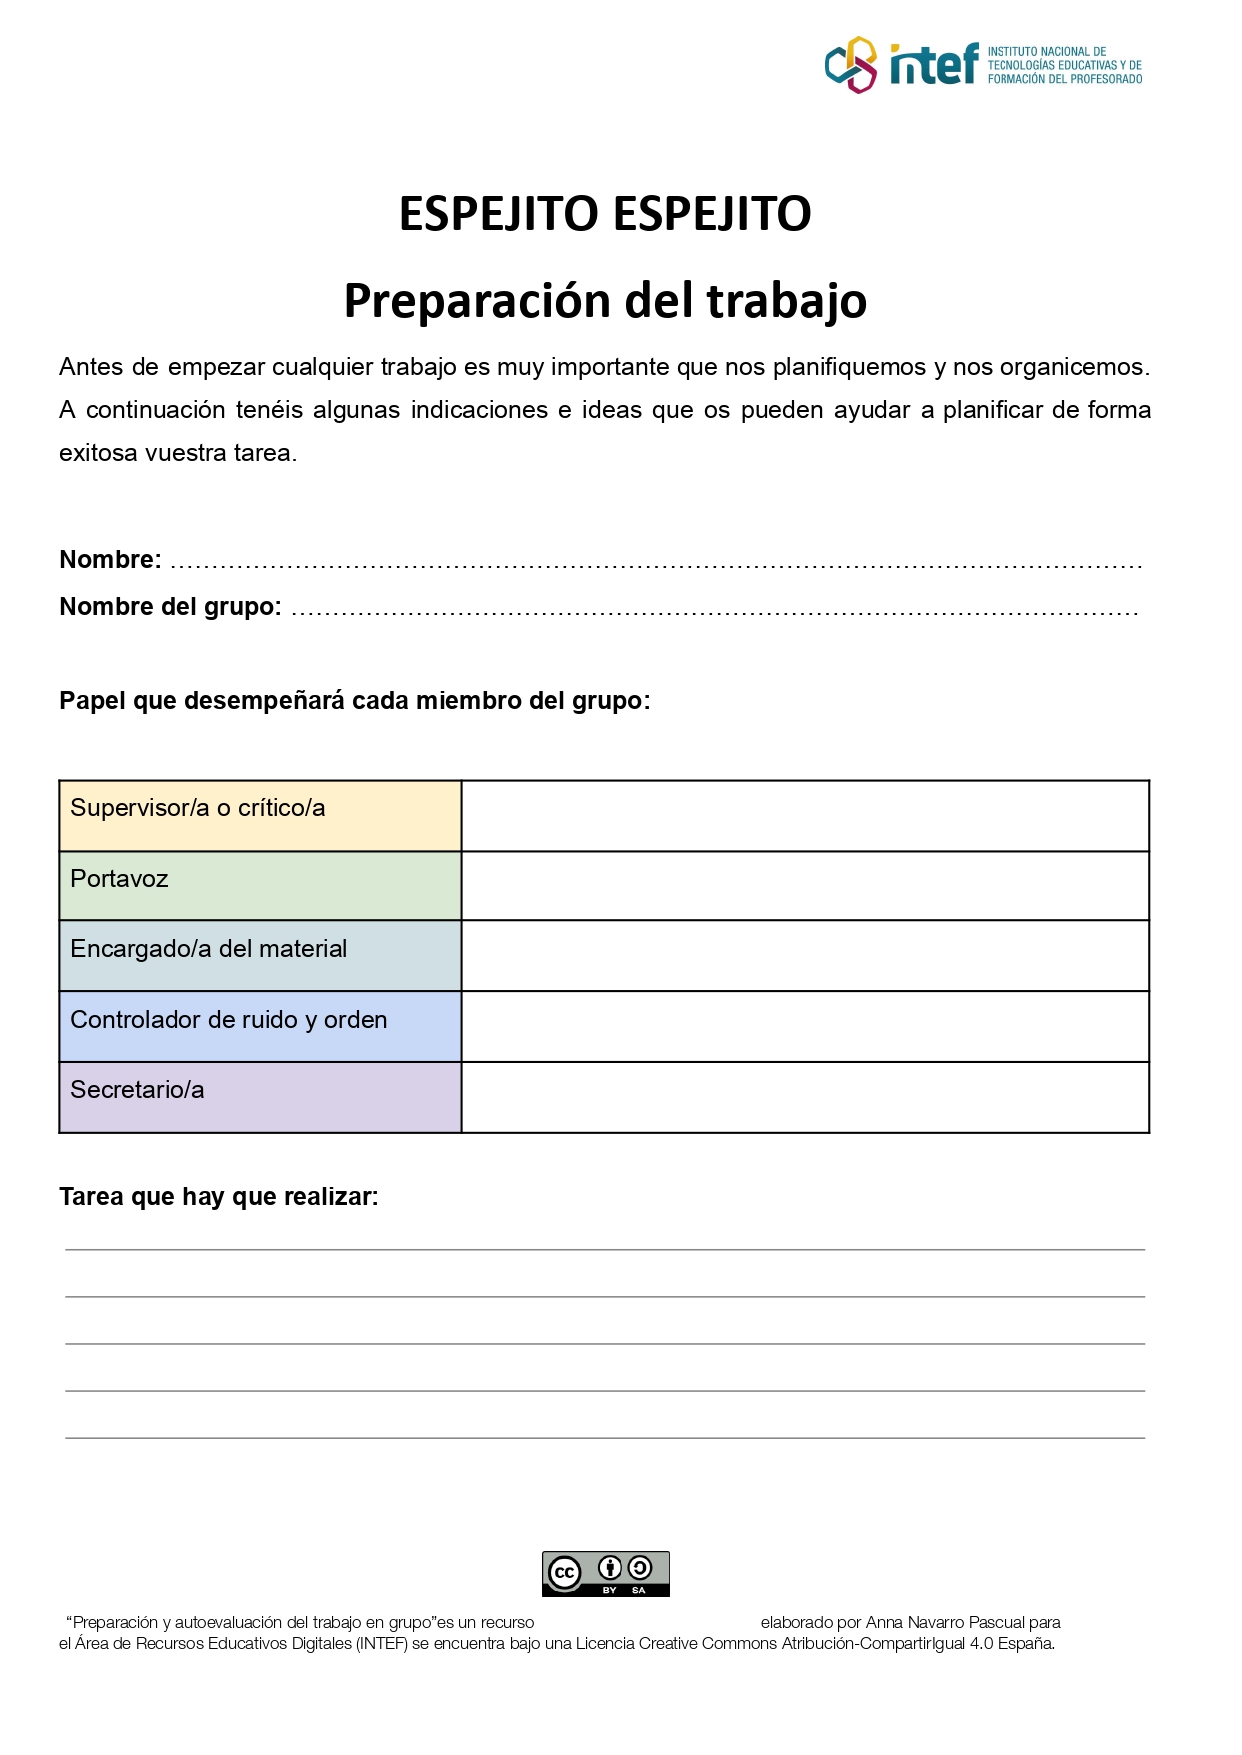 Ficha de preparación y autoevaluación de los grupos